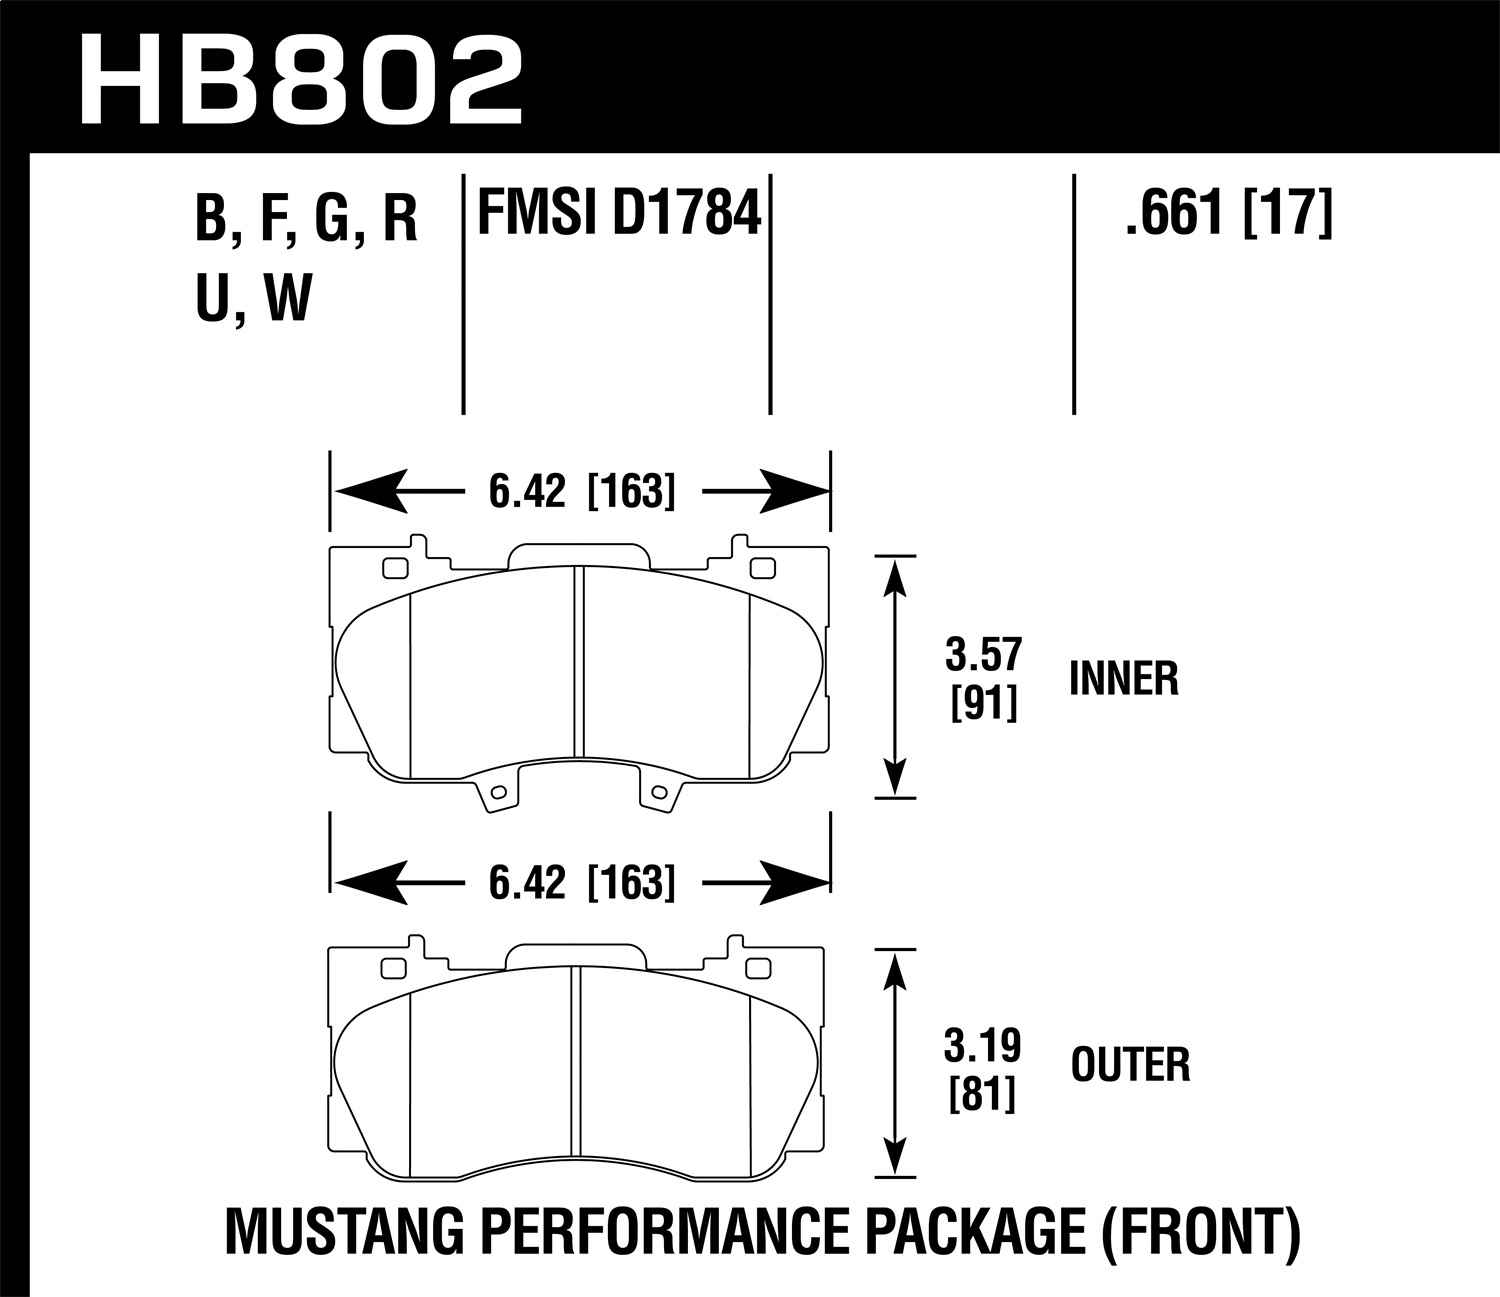 HAW-HB802F.661 #1